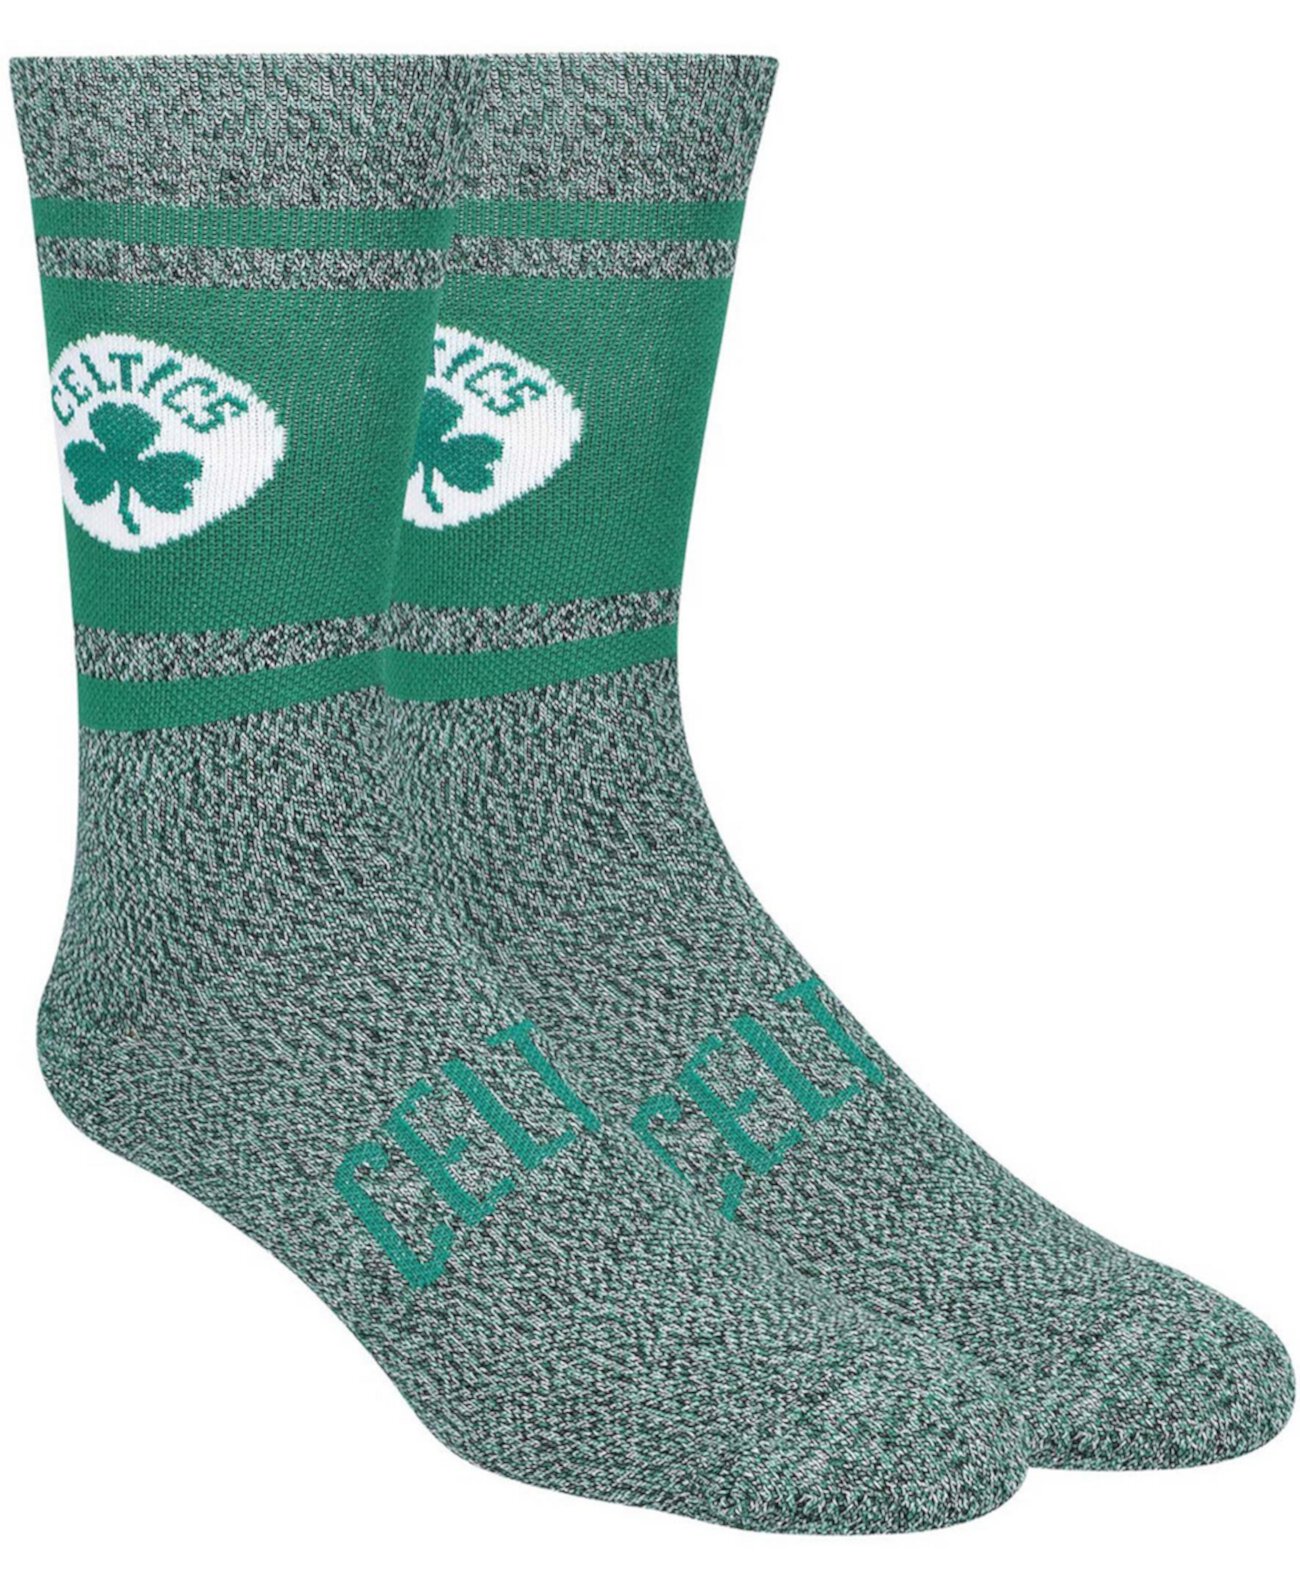 Мужские зеленые носки с круглым вырезом Boston Celtics PKWY